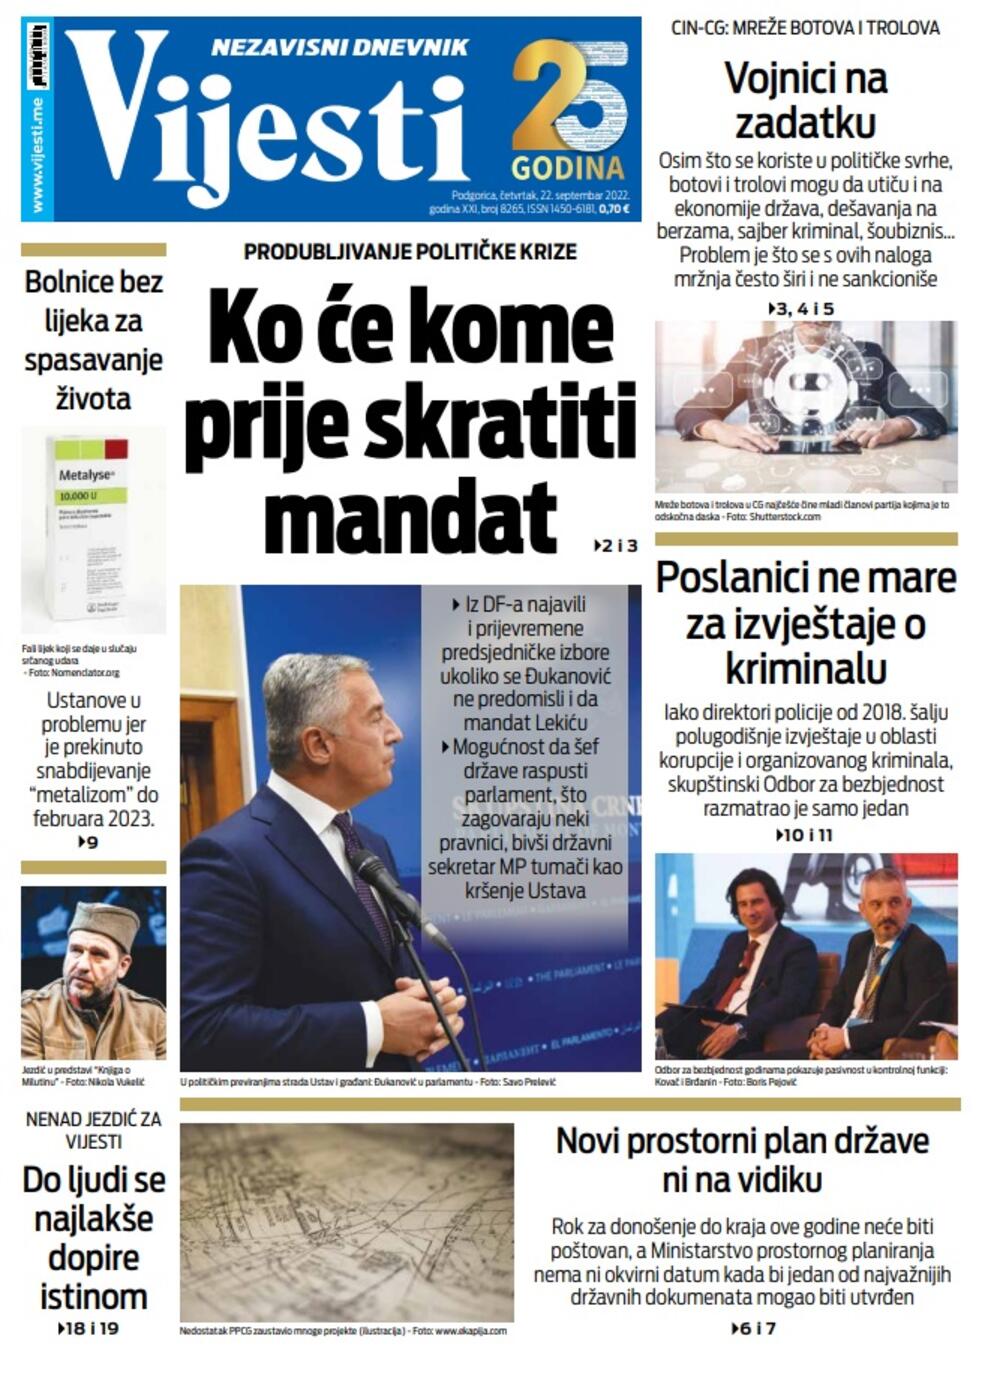 Naslovna strana "Vijesti" za četvrtak 22. septembar 2022. godine, Foto: Vijesti